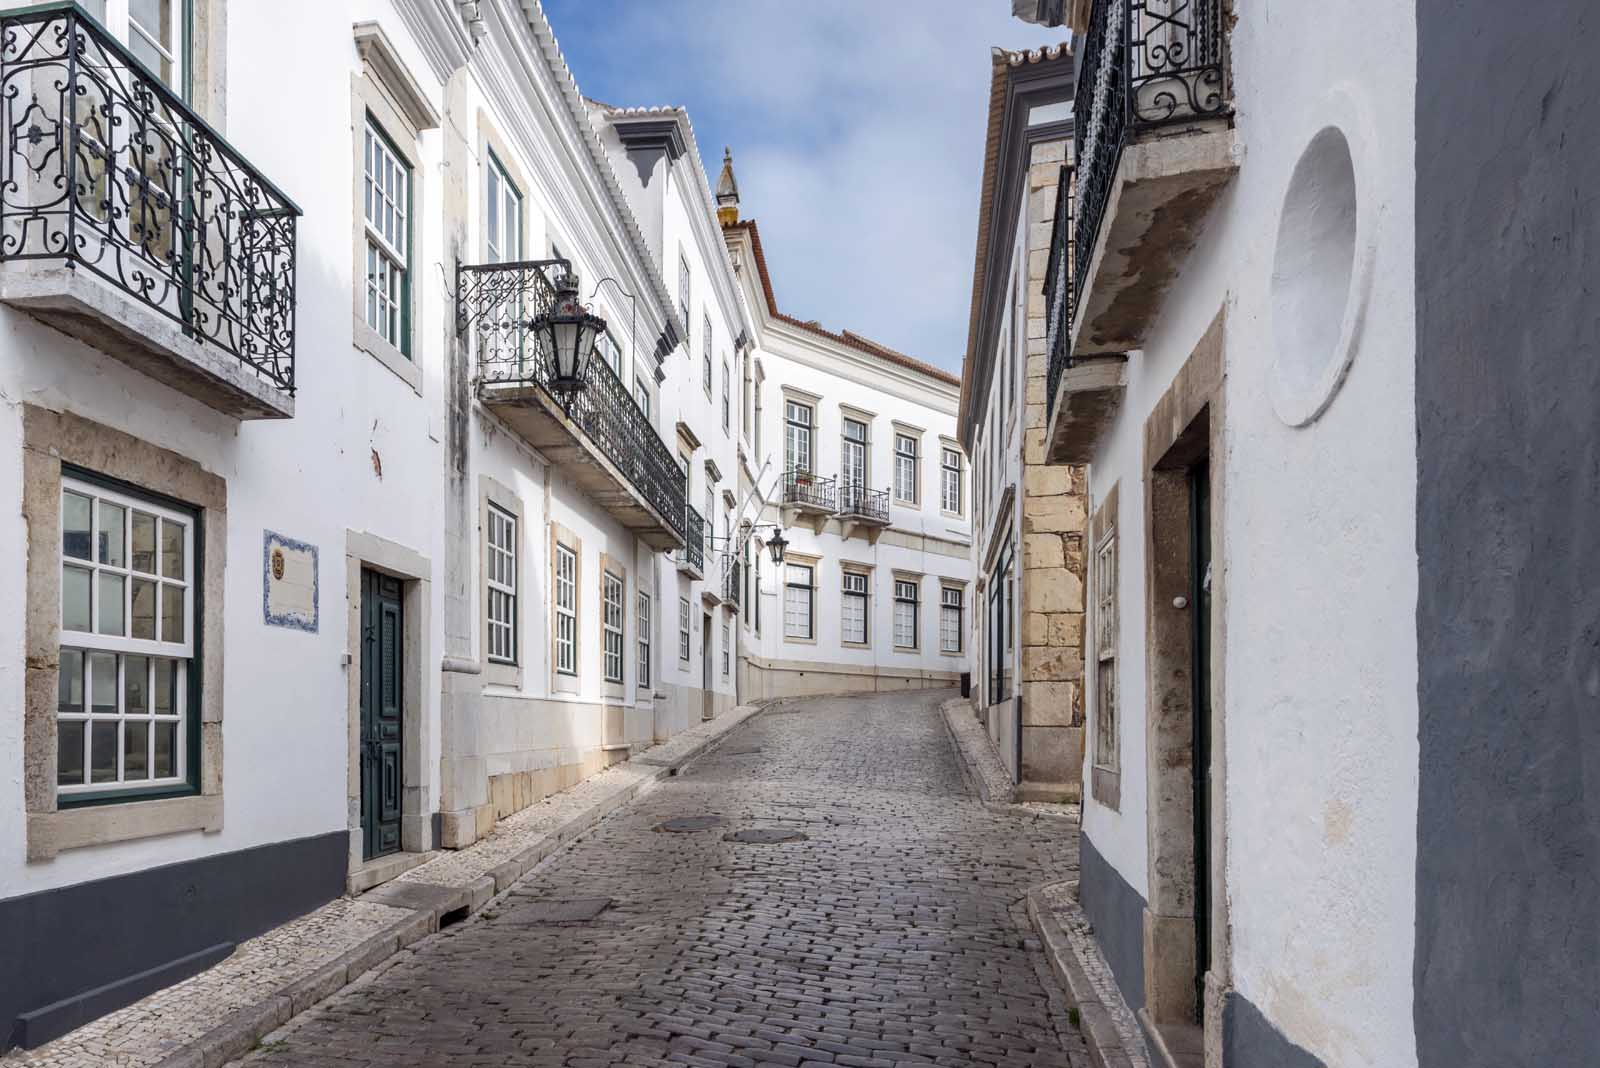 Melhores lugares para ficar no centro de Faro Algarve